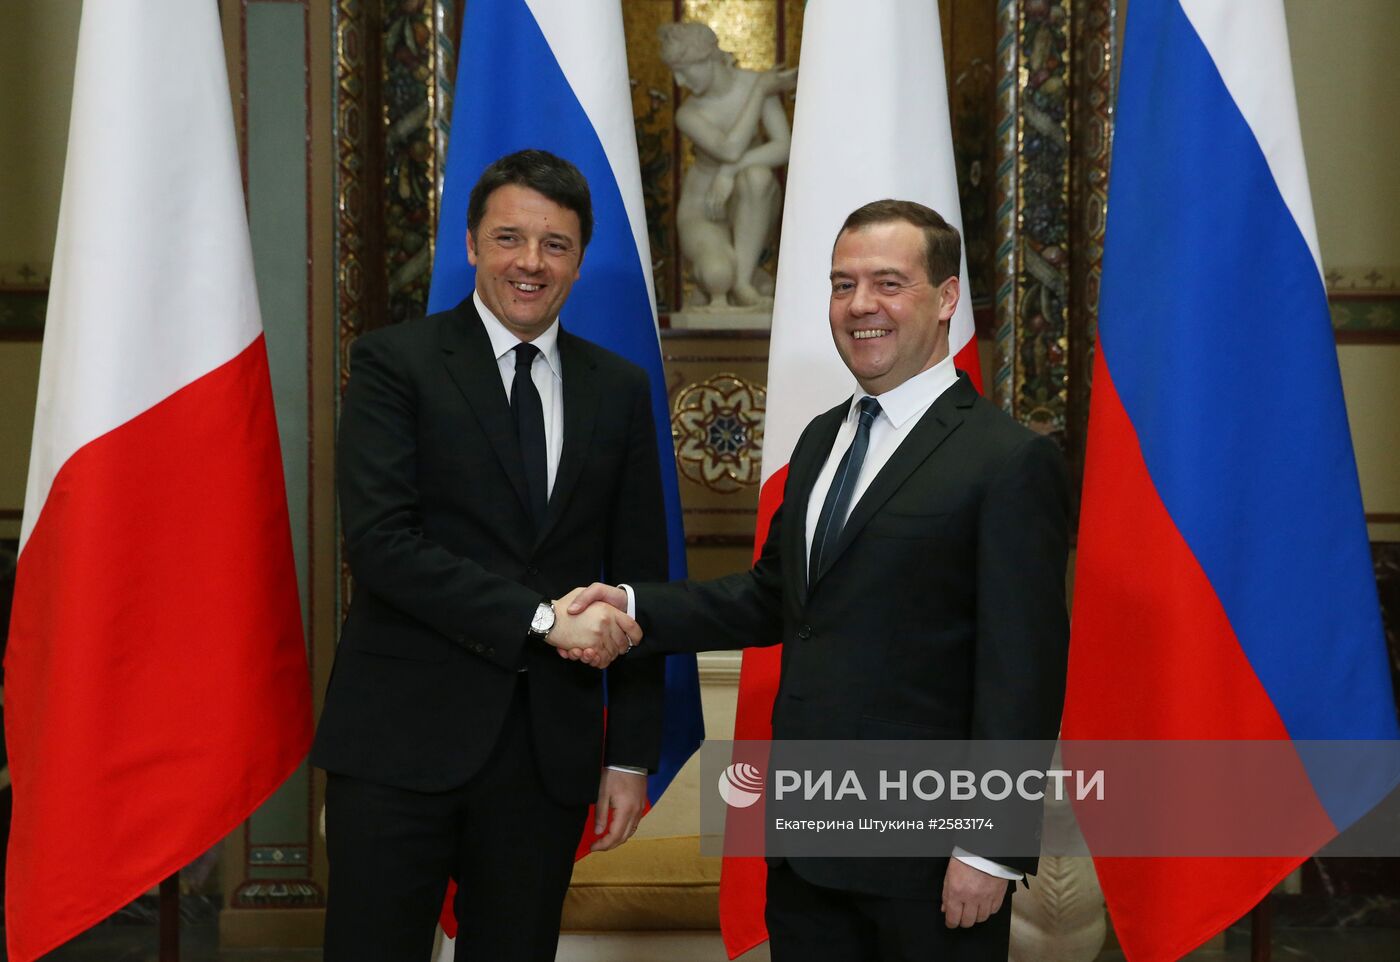 Встреча премьер-министра РФ Д.Медведева и премьер-министра Италии М.Ренци